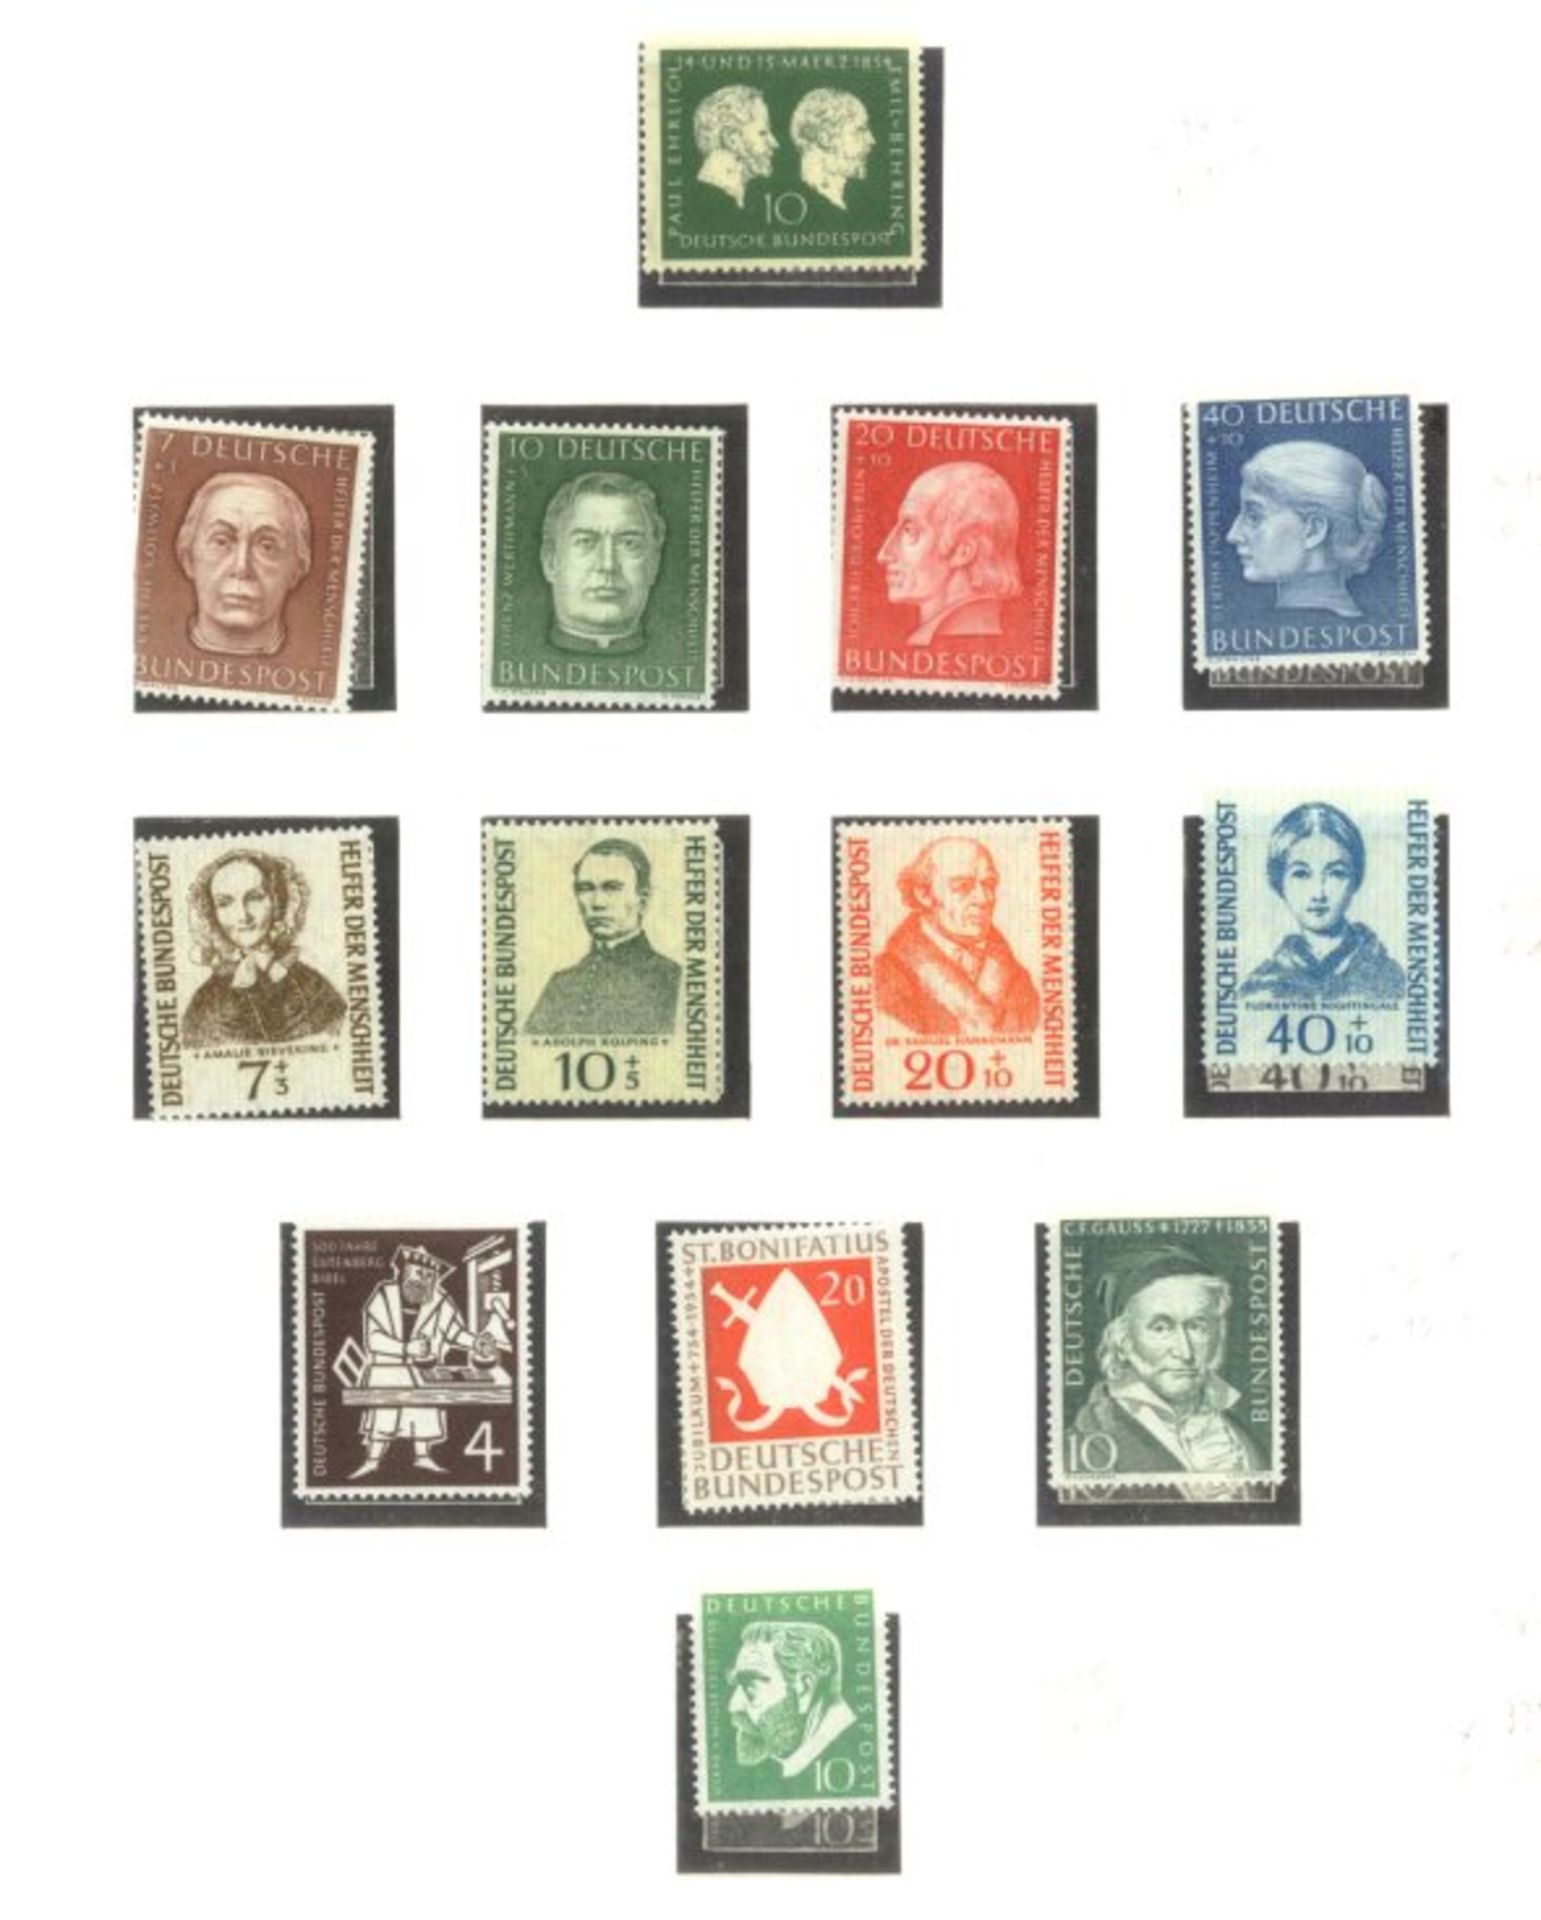 BUND 1949-1986sehr saubere postfrische Sammlung auf LINDNER -Falzlosblättern mit 3 Ringbindern. In - Bild 8 aus 9